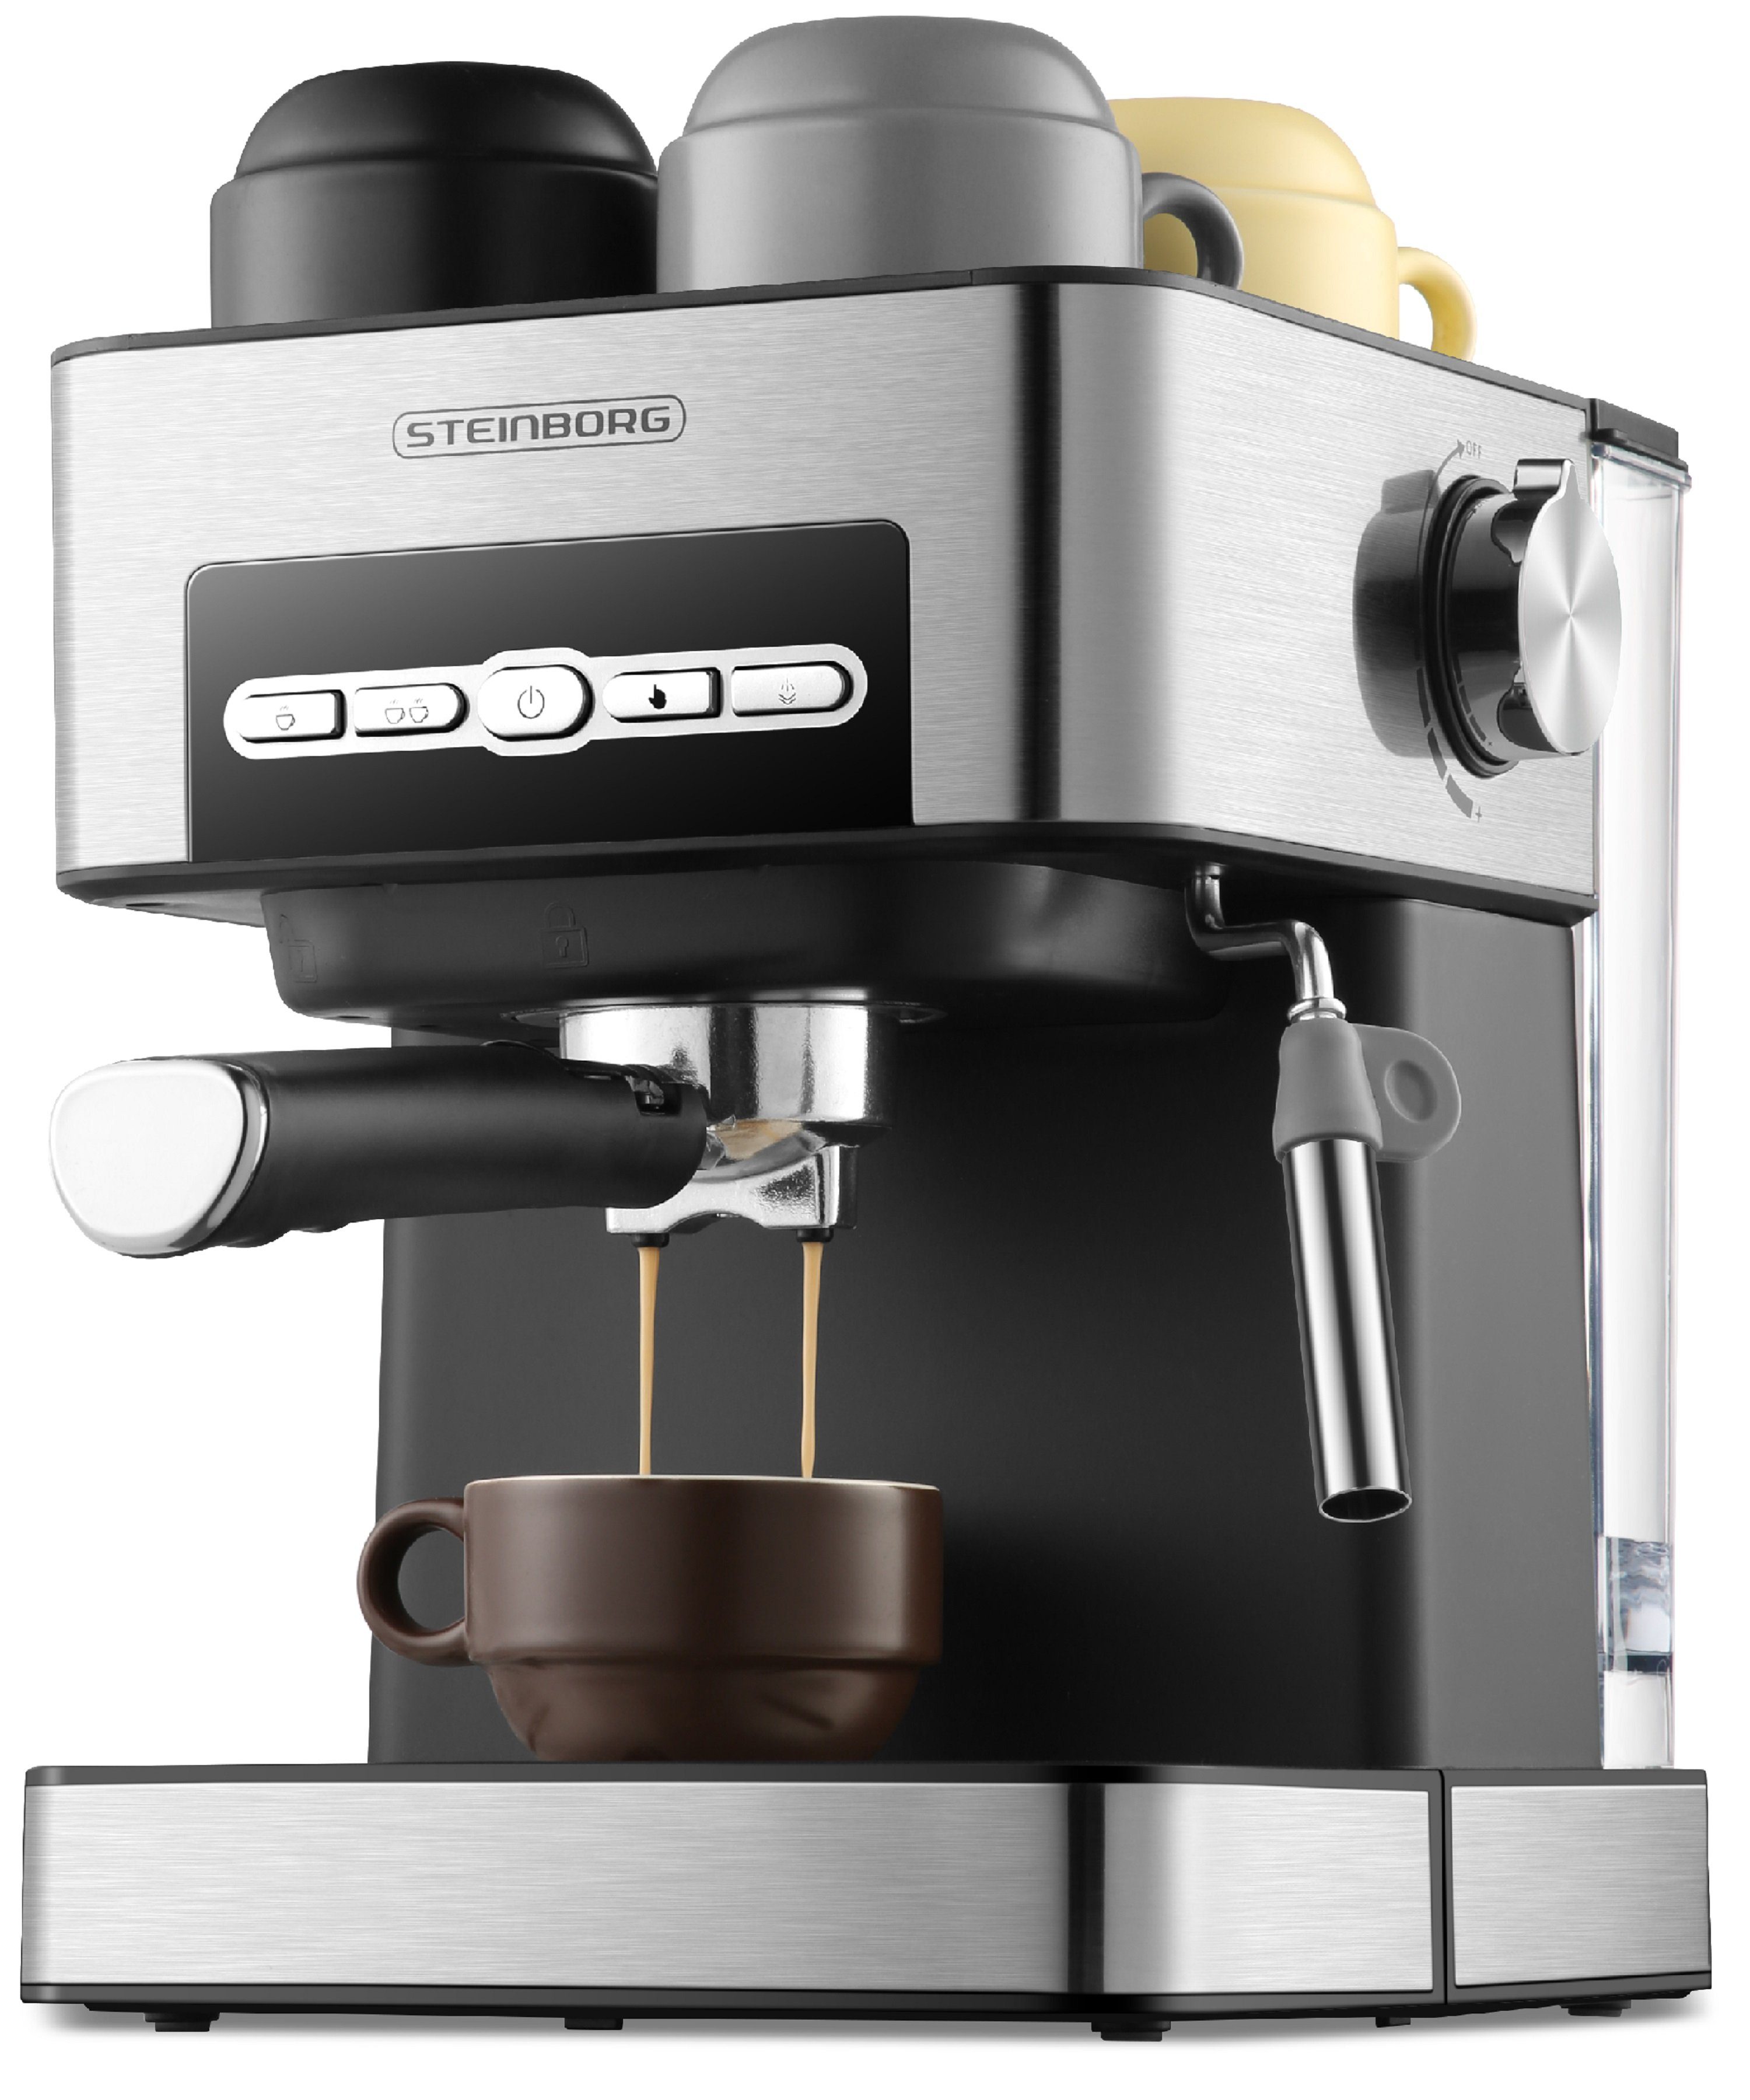 STEINBORG Filterkaffeemaschine SB-6040, Edelstahl Design, 15 bar, Milchaufschäumer